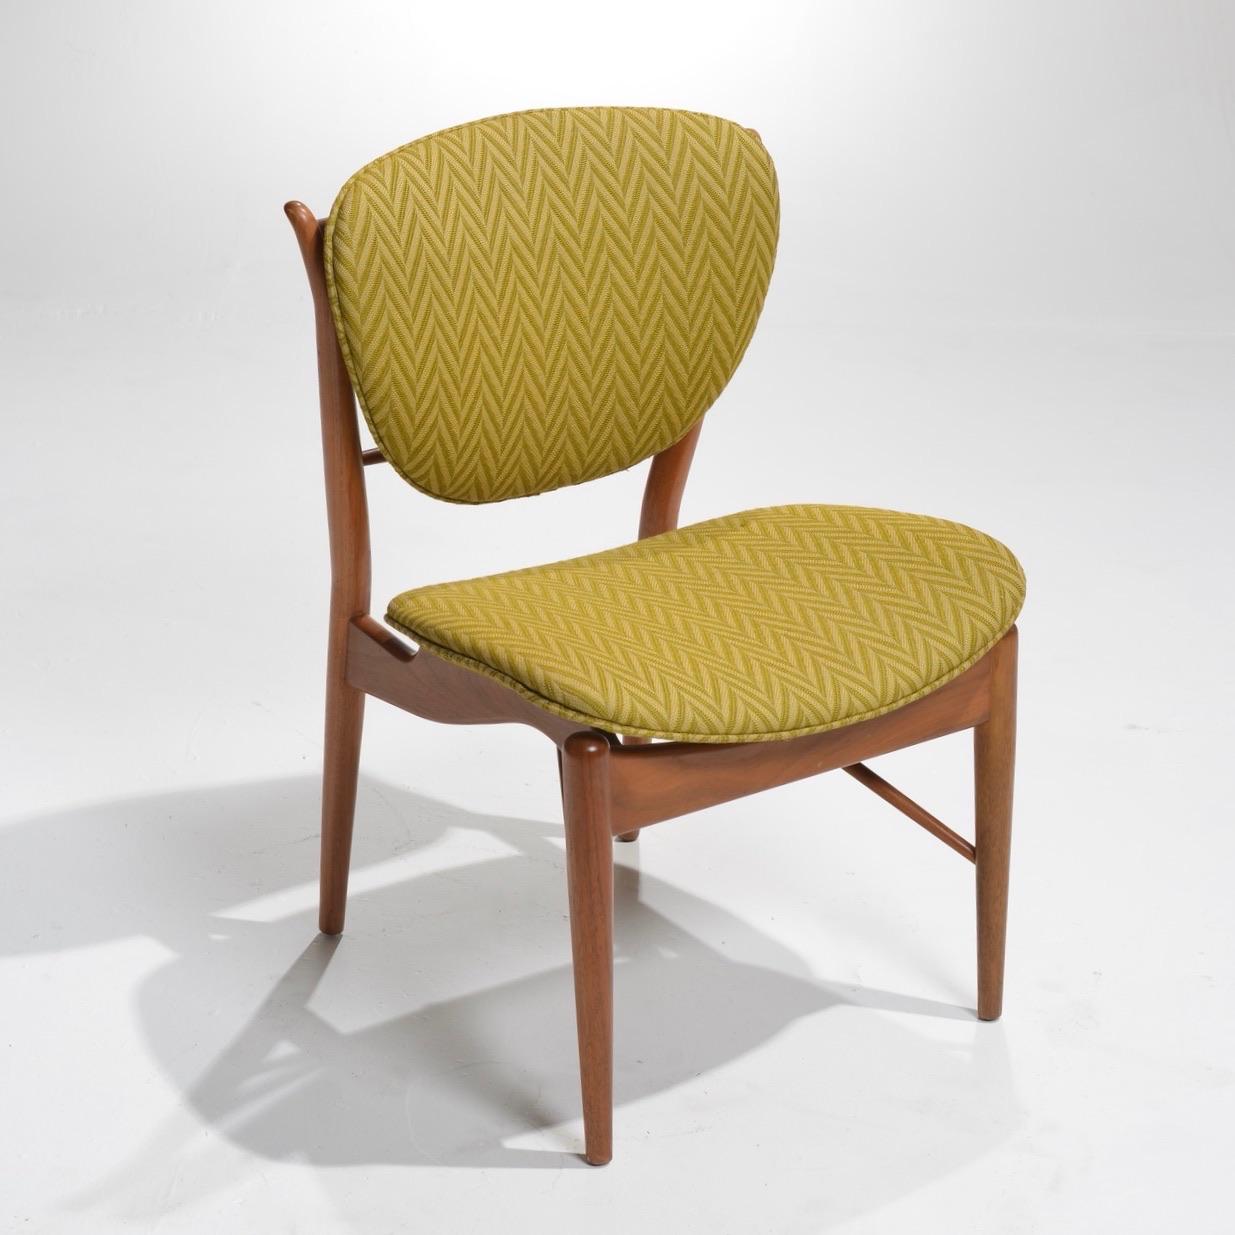 American Finn Juhl 51 Chairs by Baker, 1952 For Sale